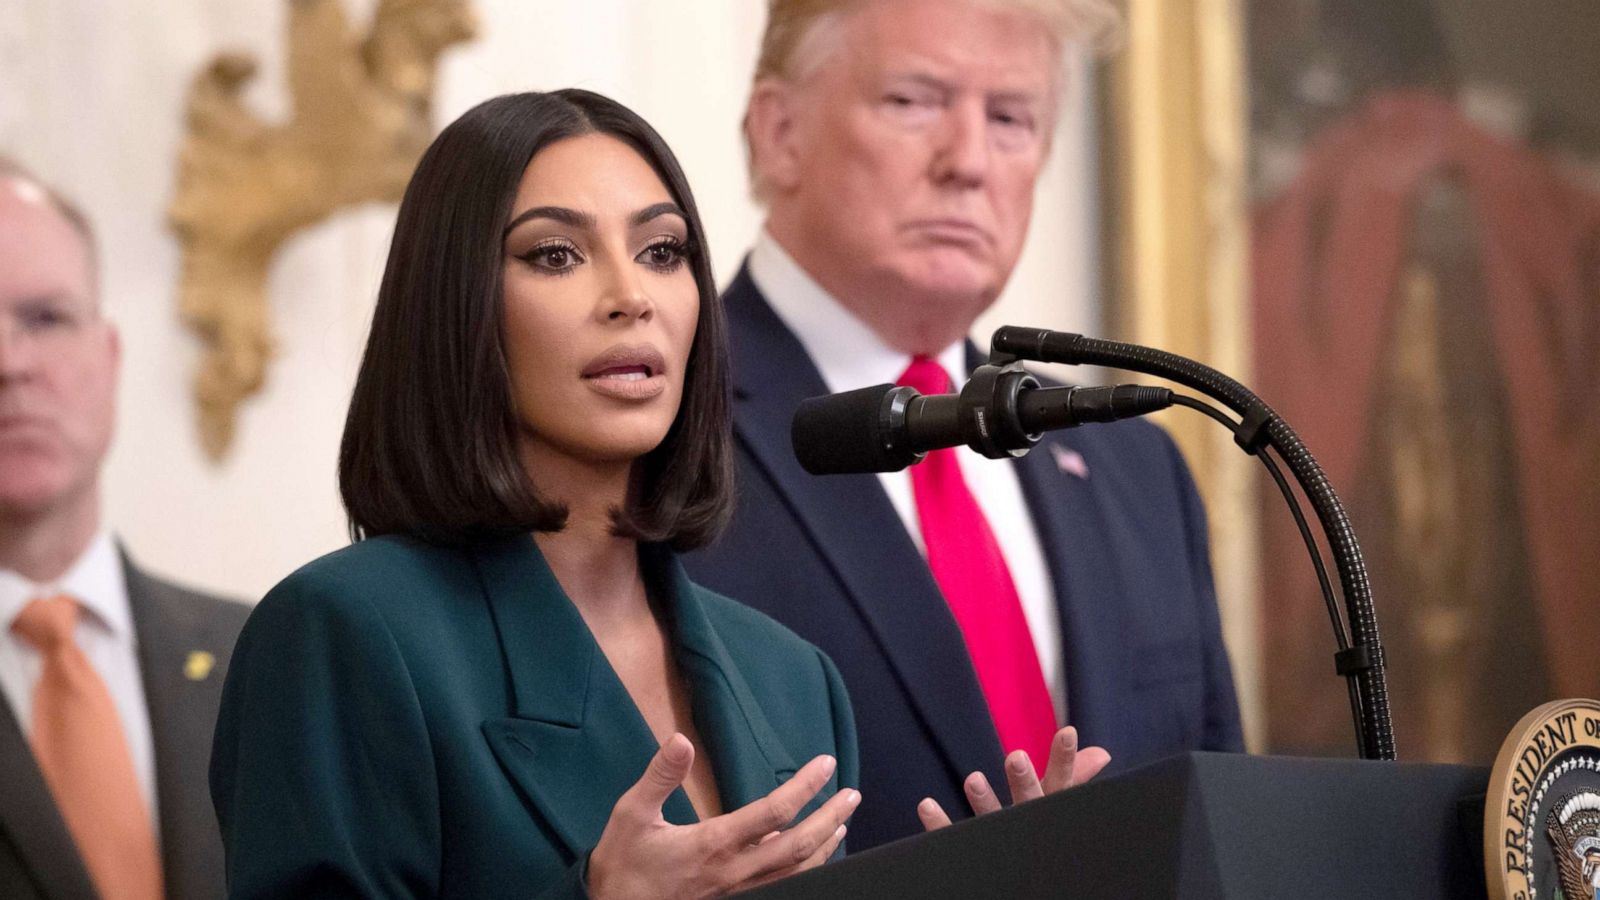 Kim Kardashian West Speaks At Criminal Justice Reform Event At